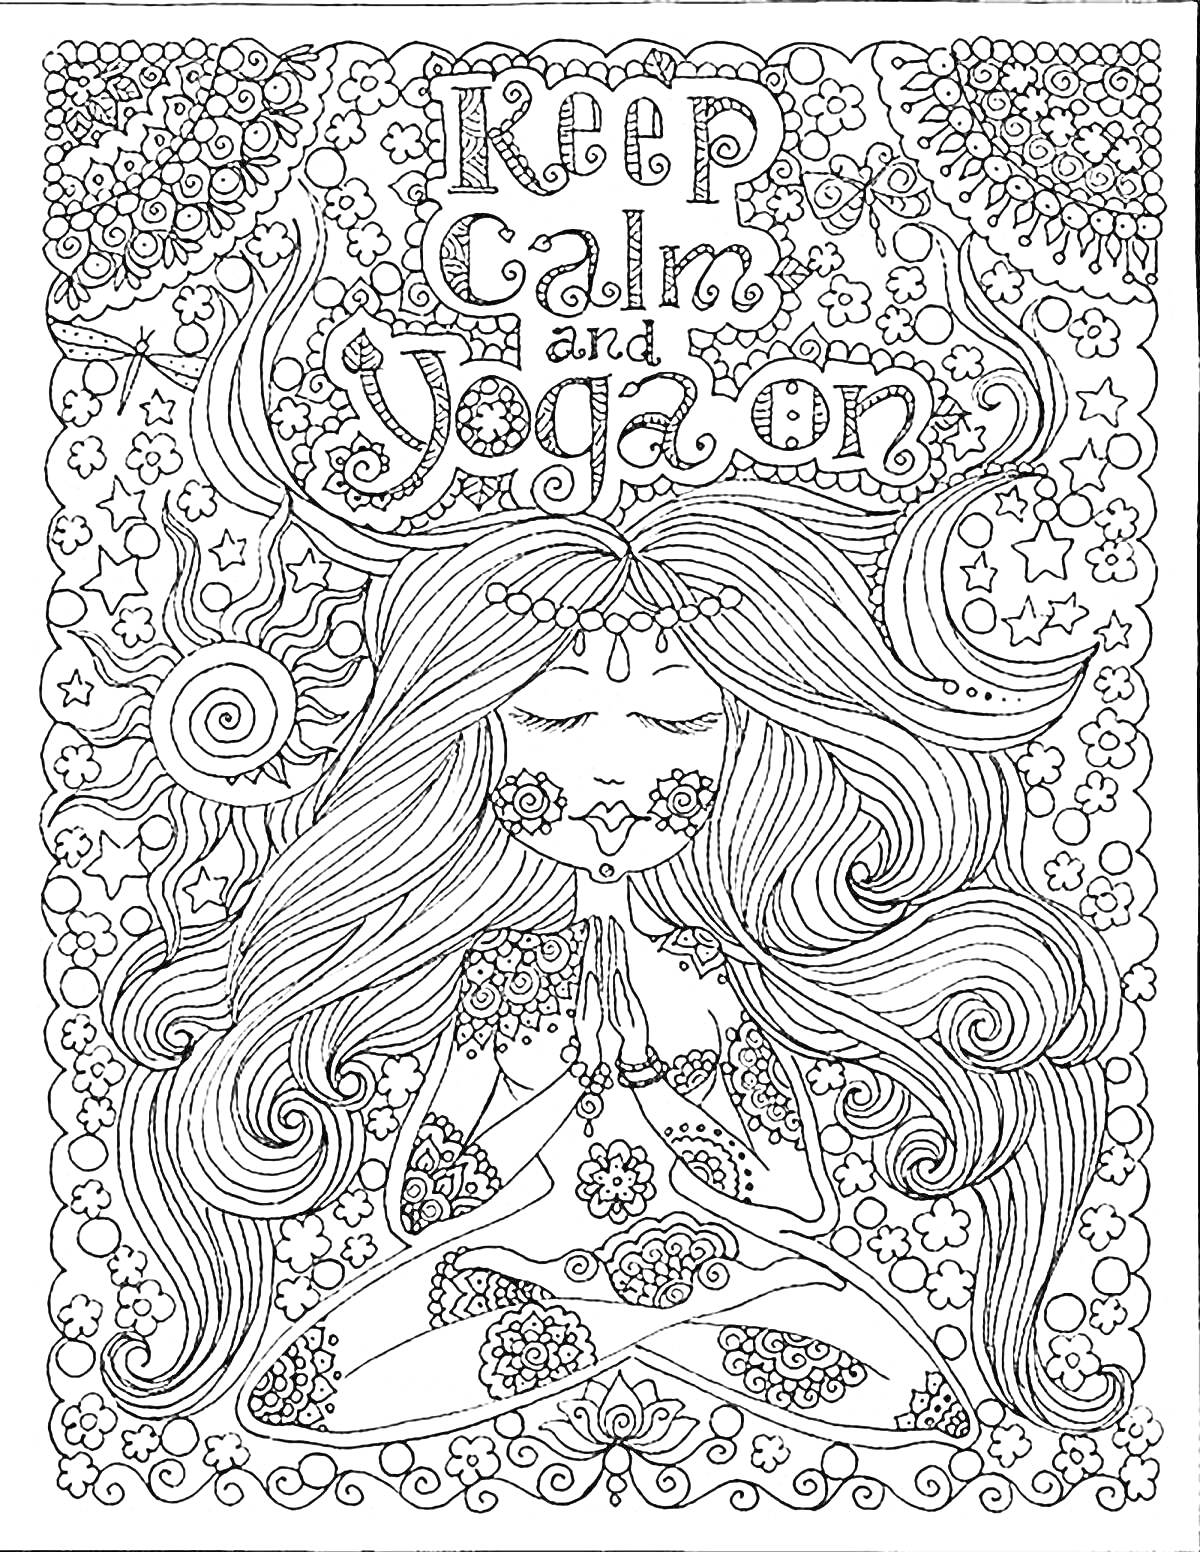 Дева в позе йоги с длинными распущенными волосами, окружена цветами и узорами, надпись 